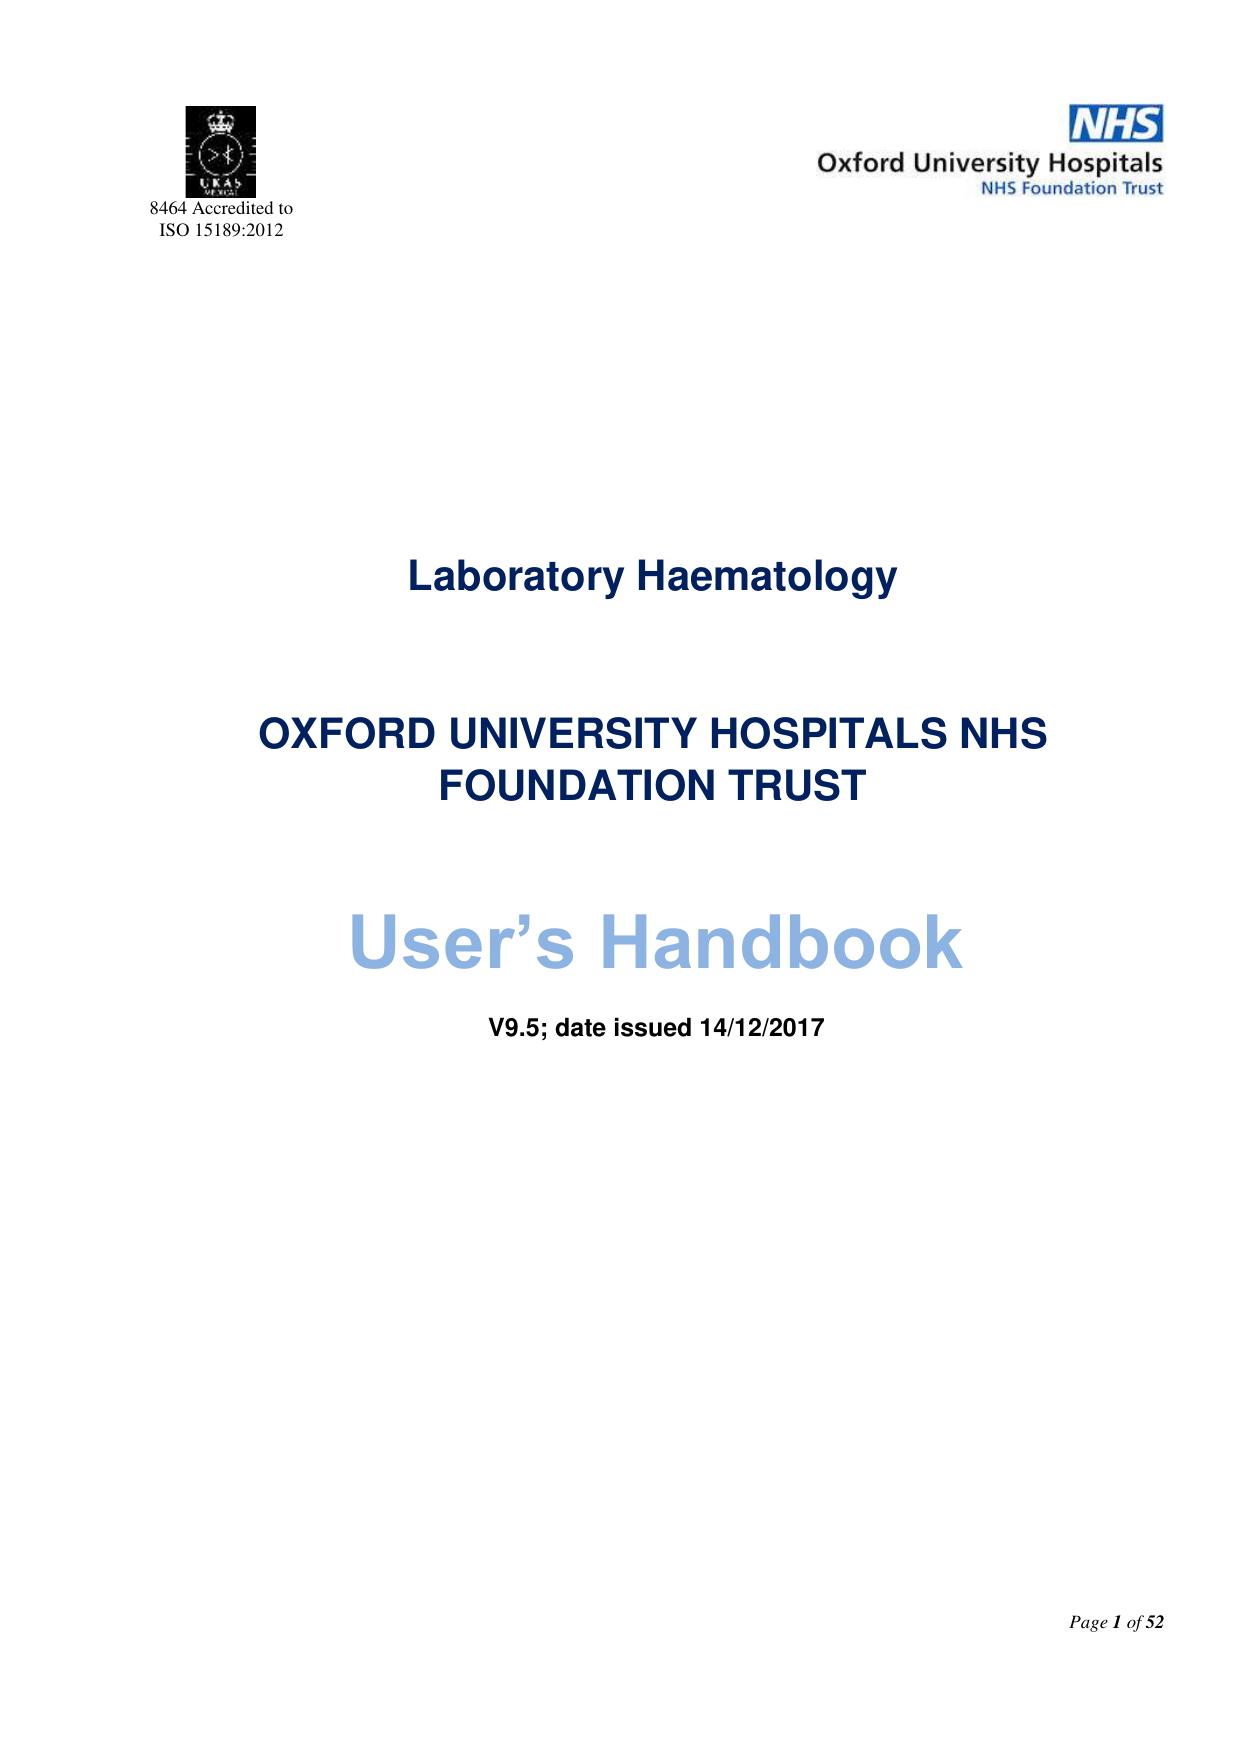 Laboratory Haematology User's Handbook